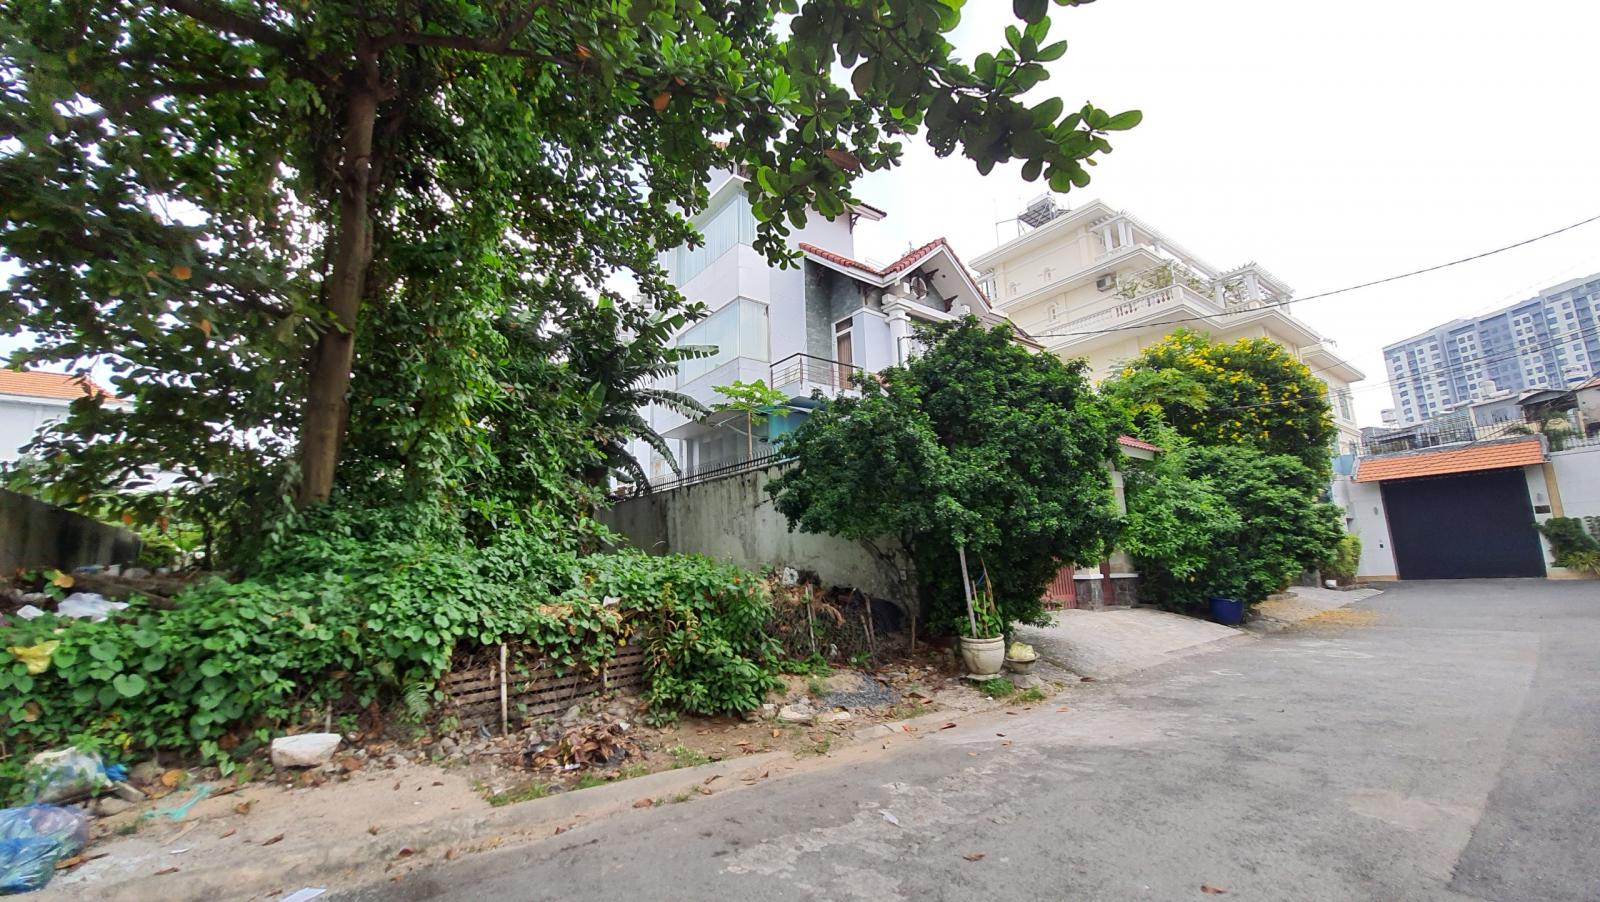 Bán đất biệt thự compound phường Bình An Q2, gần cầu Sài Gòn, 10x30, 105tr/m2, sổ đỏ. LH: 0906997966